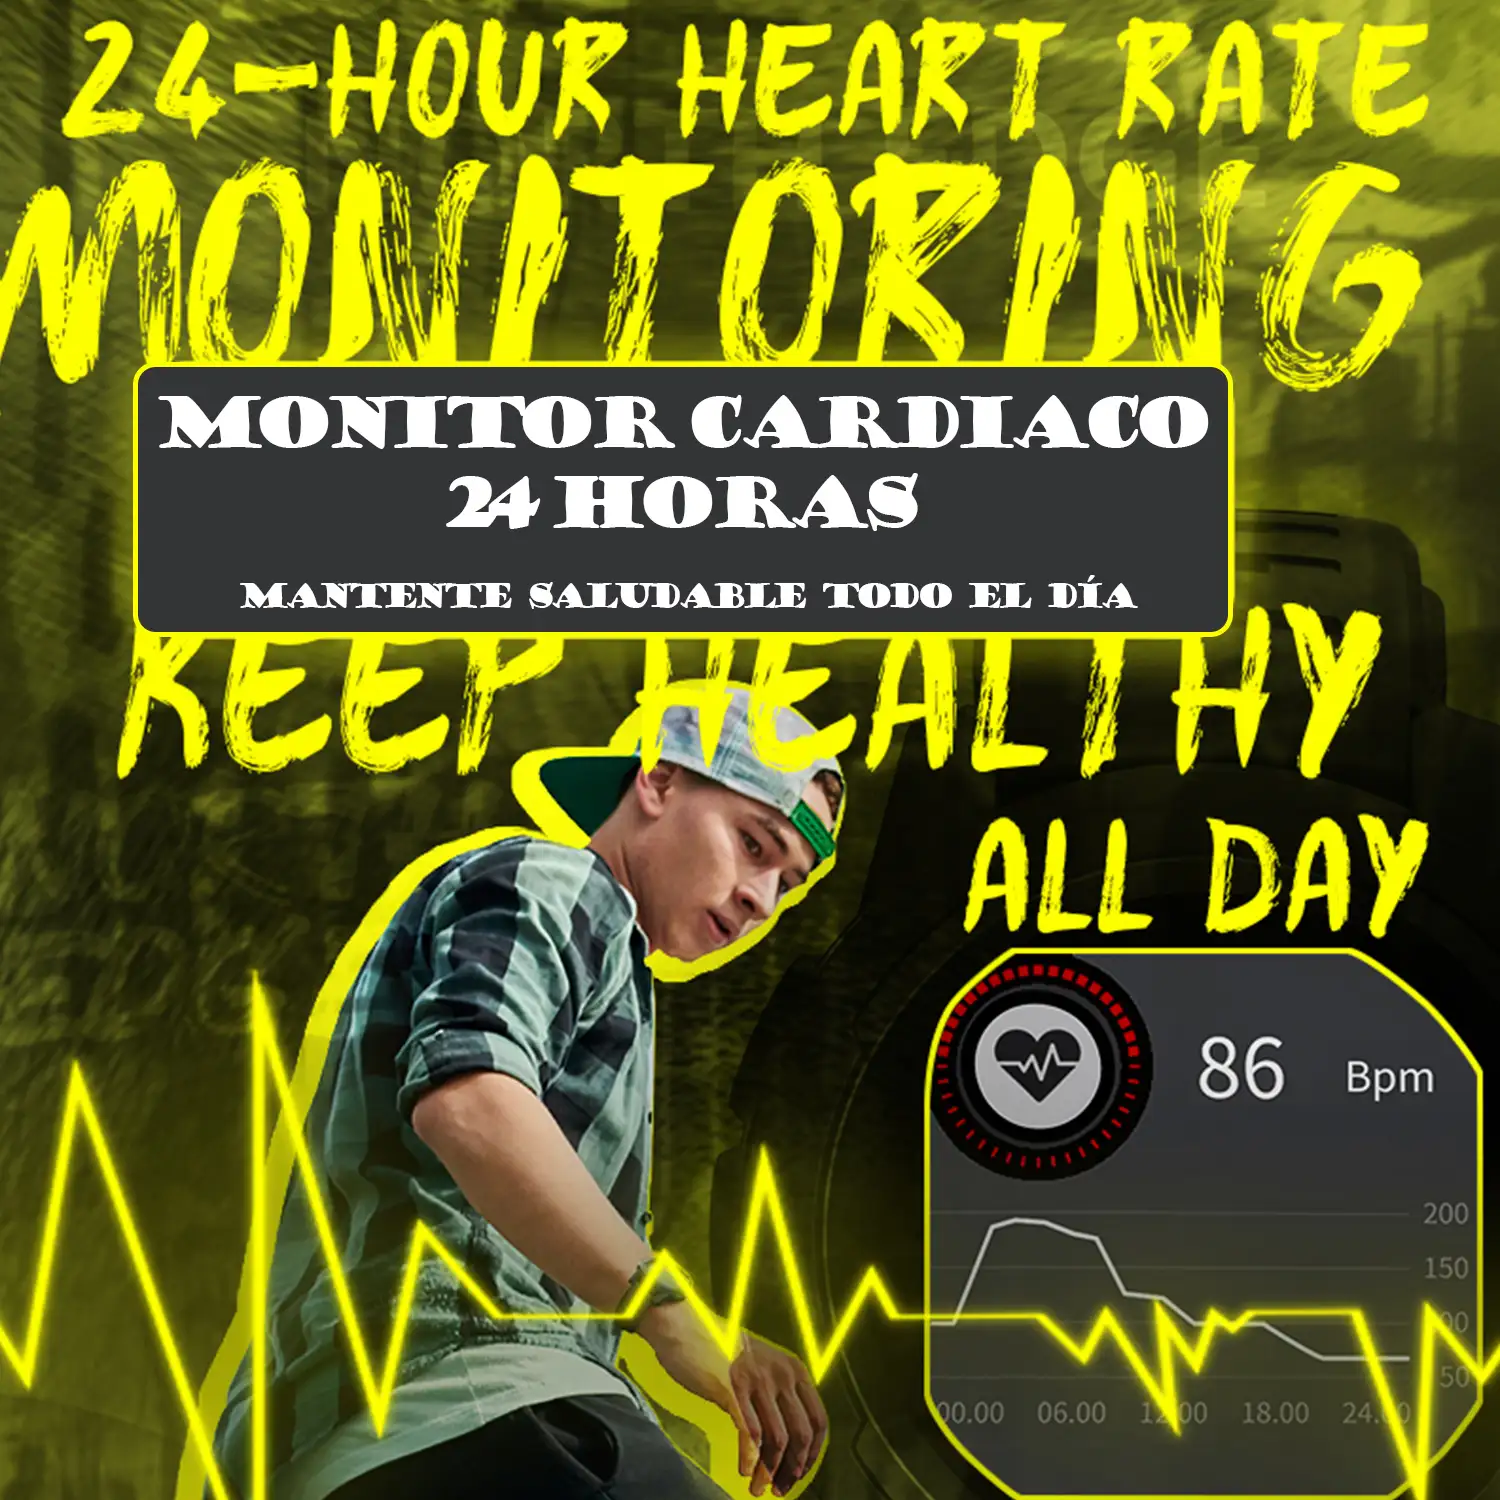 Smartwatch Mars2 con monitor cardiaco, de tensión y O2 en sangre. Varios modos deportivos, notificaciones de apps.